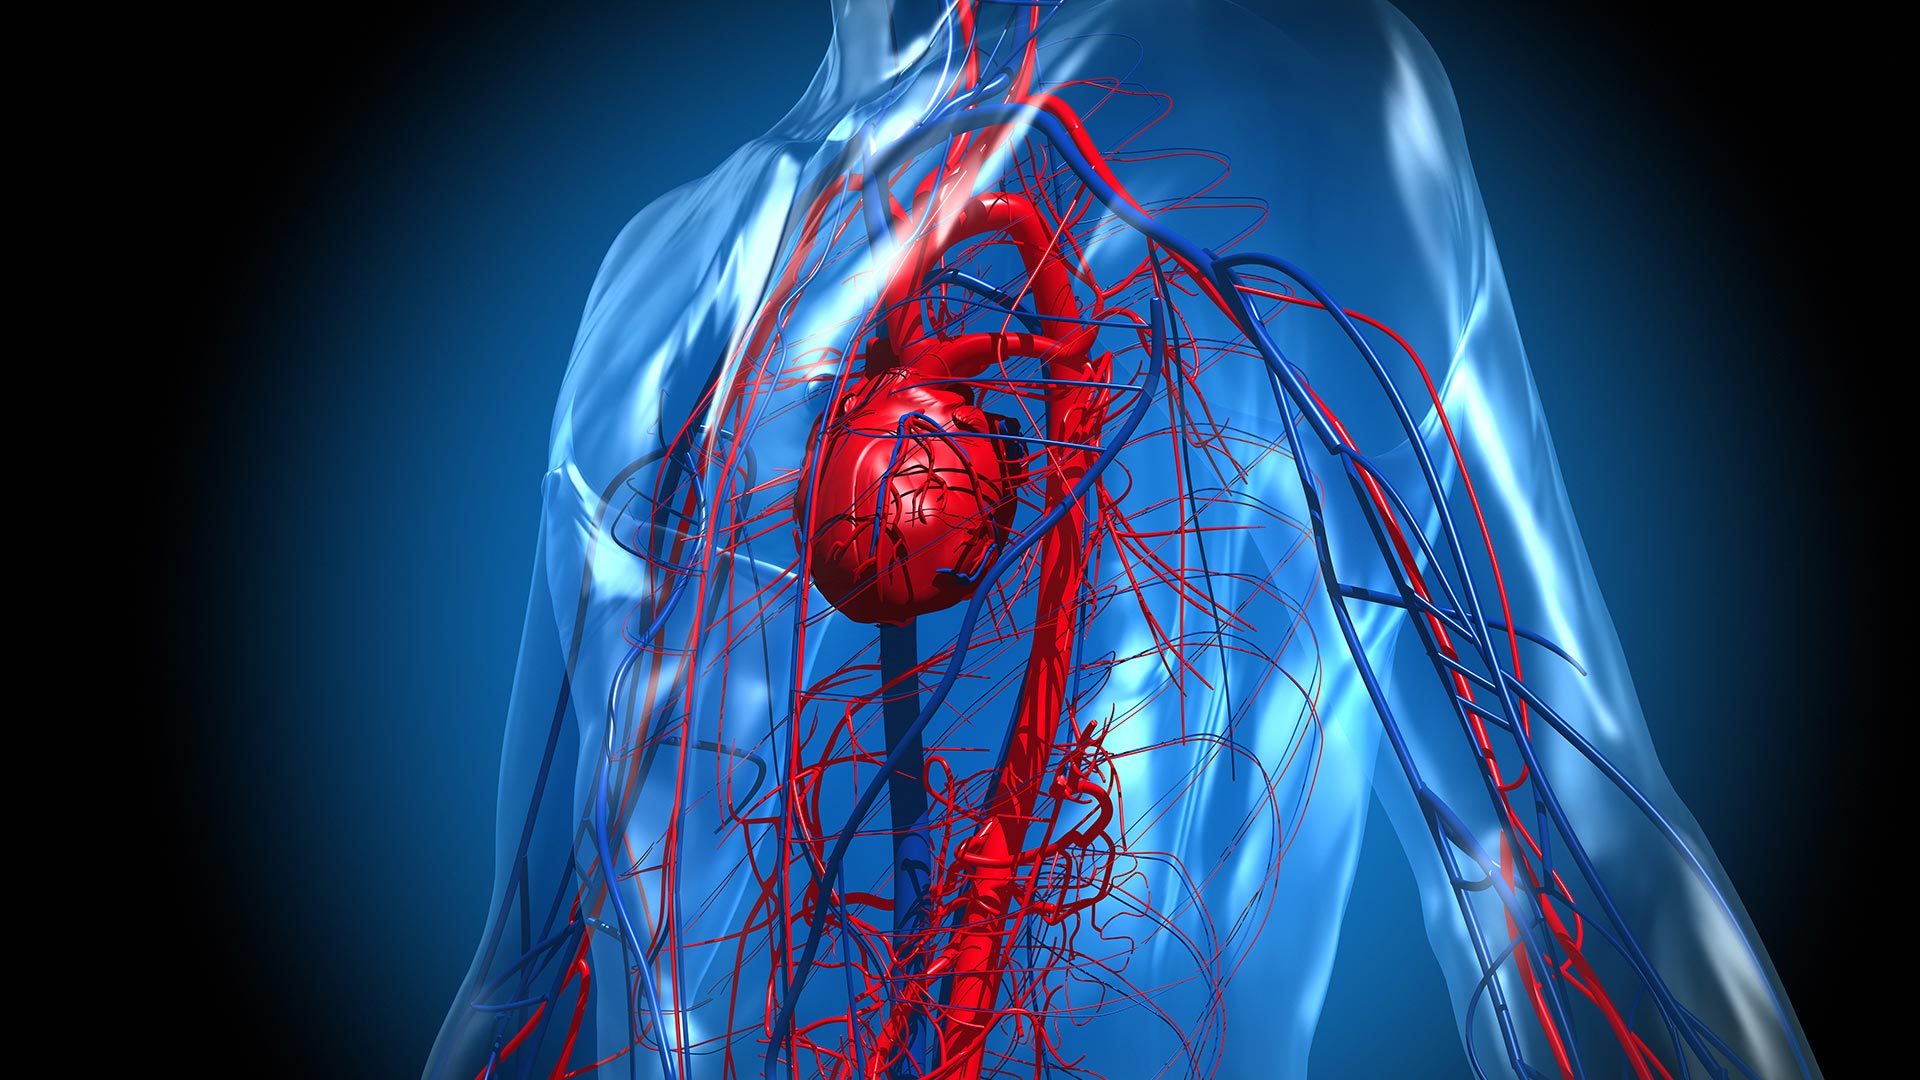 Ritmos cardíacos disruptivos o inflamación del corazón, pueden ser algunas de las manifestaciones del COVID prolongado (Getty)